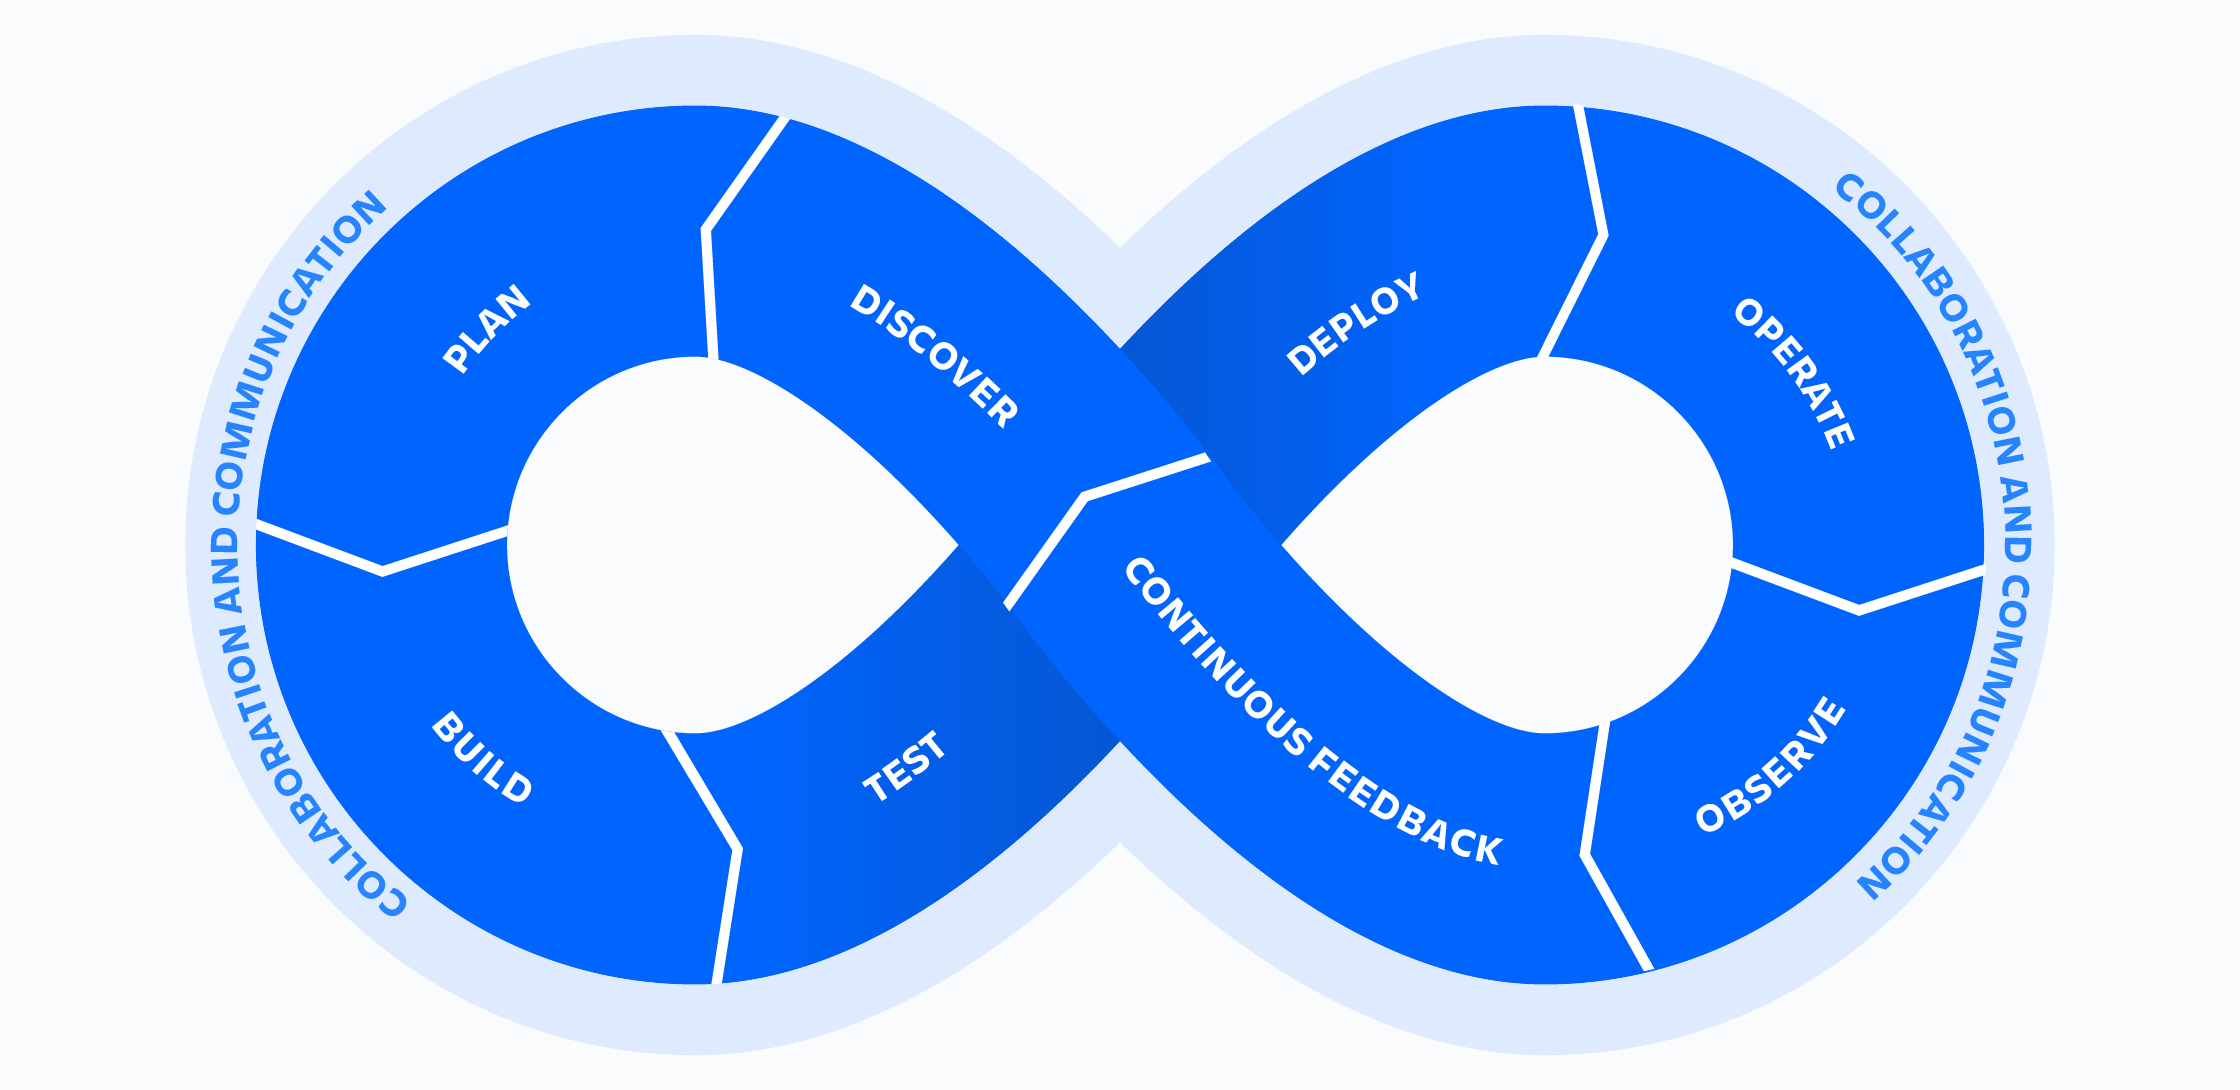 Rueda en forma de símbolo de infinito de DevOps de Atlassian